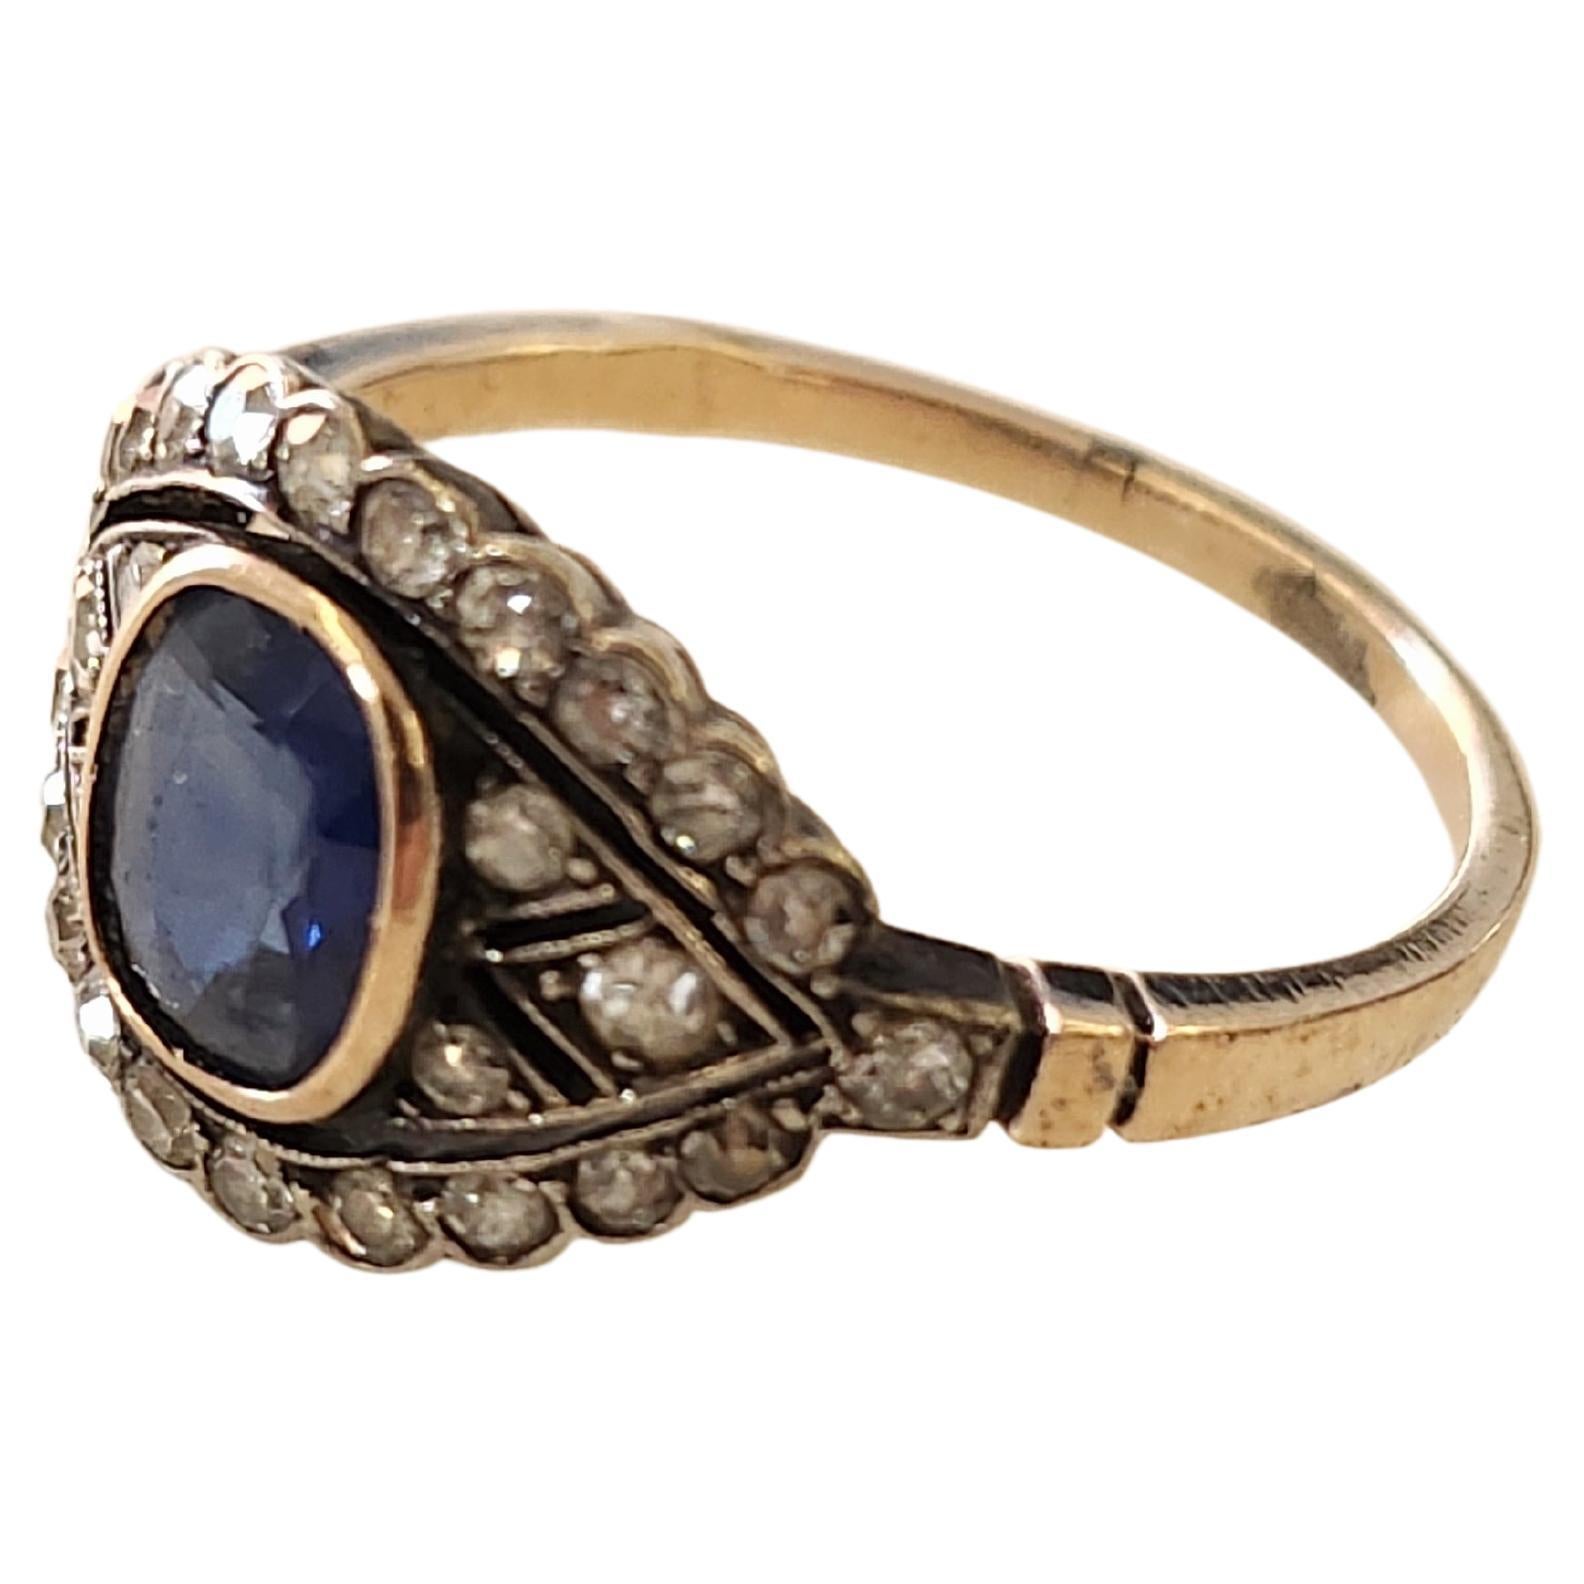 Antike 14k Gold russischen Ring mit 1 natürlichen blauen Saphir in ovalen Schliff mit einem Durchmesser von 7,85mm×6,80mm flankiert mit mehreren Single-Cut-Diamanten Schätzung Gewicht von 0,60 ct Ring ist Halle markiert 56 kaiserlichen russischen